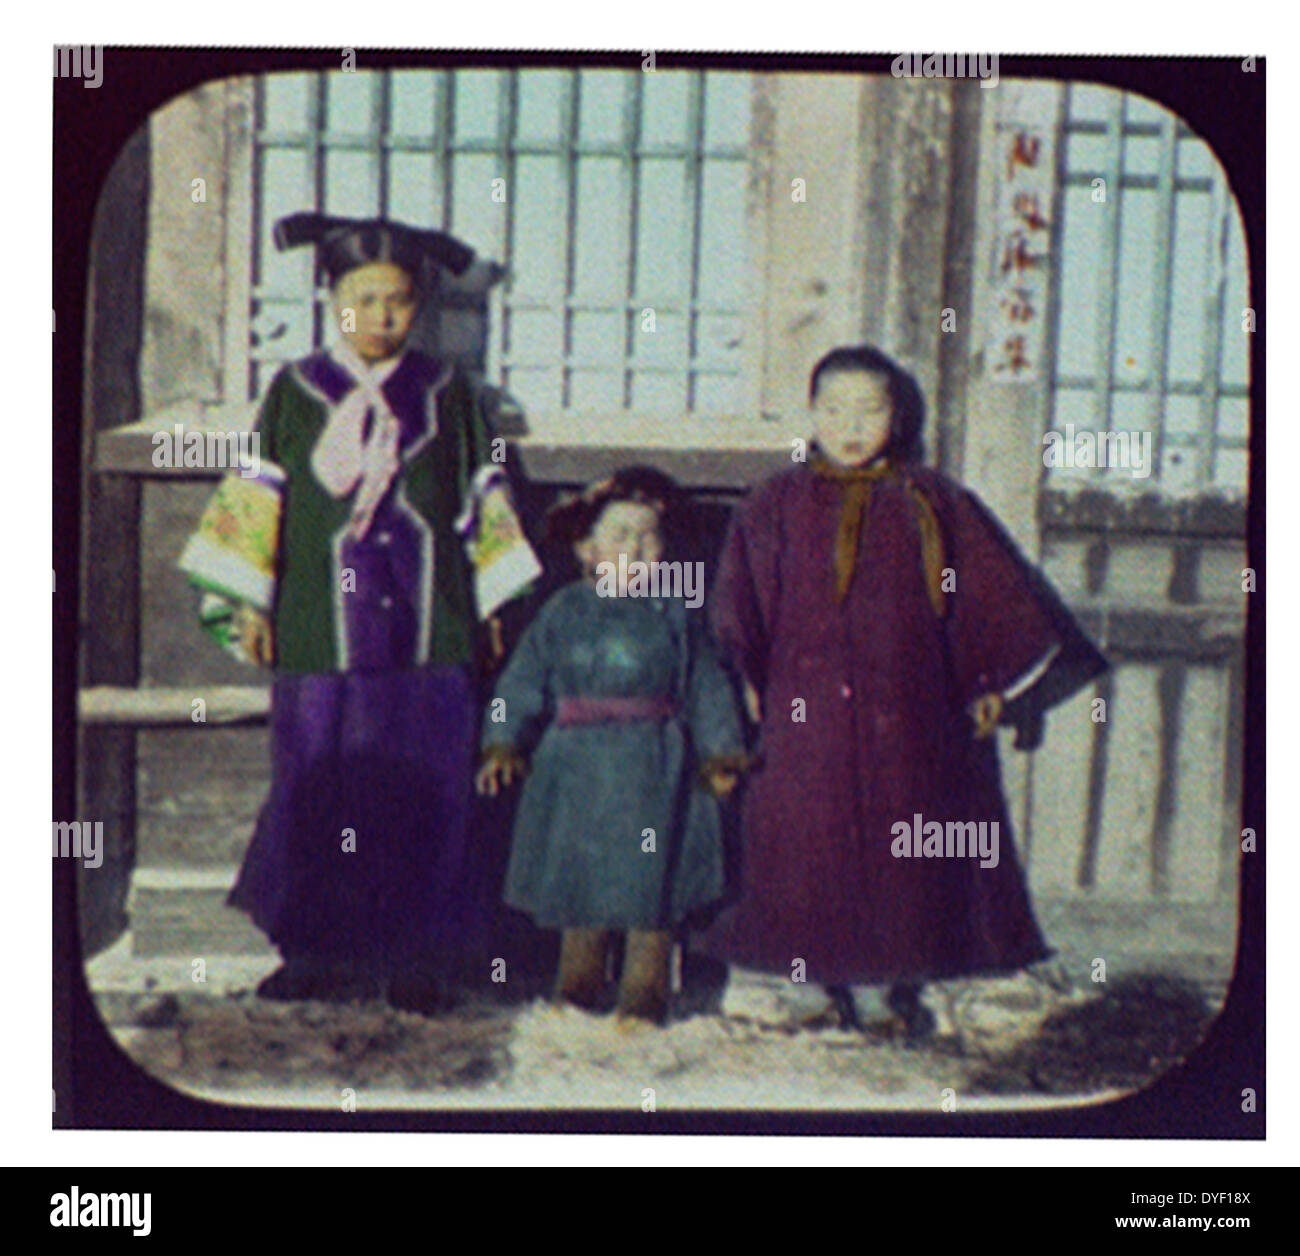 Chinesische Kinder in traditionellen Kleid um 1900 von John Thomson, 1837-1921, Fotograf. Veröffentlicht am: zwischen 1870 und 1872 Stockfoto